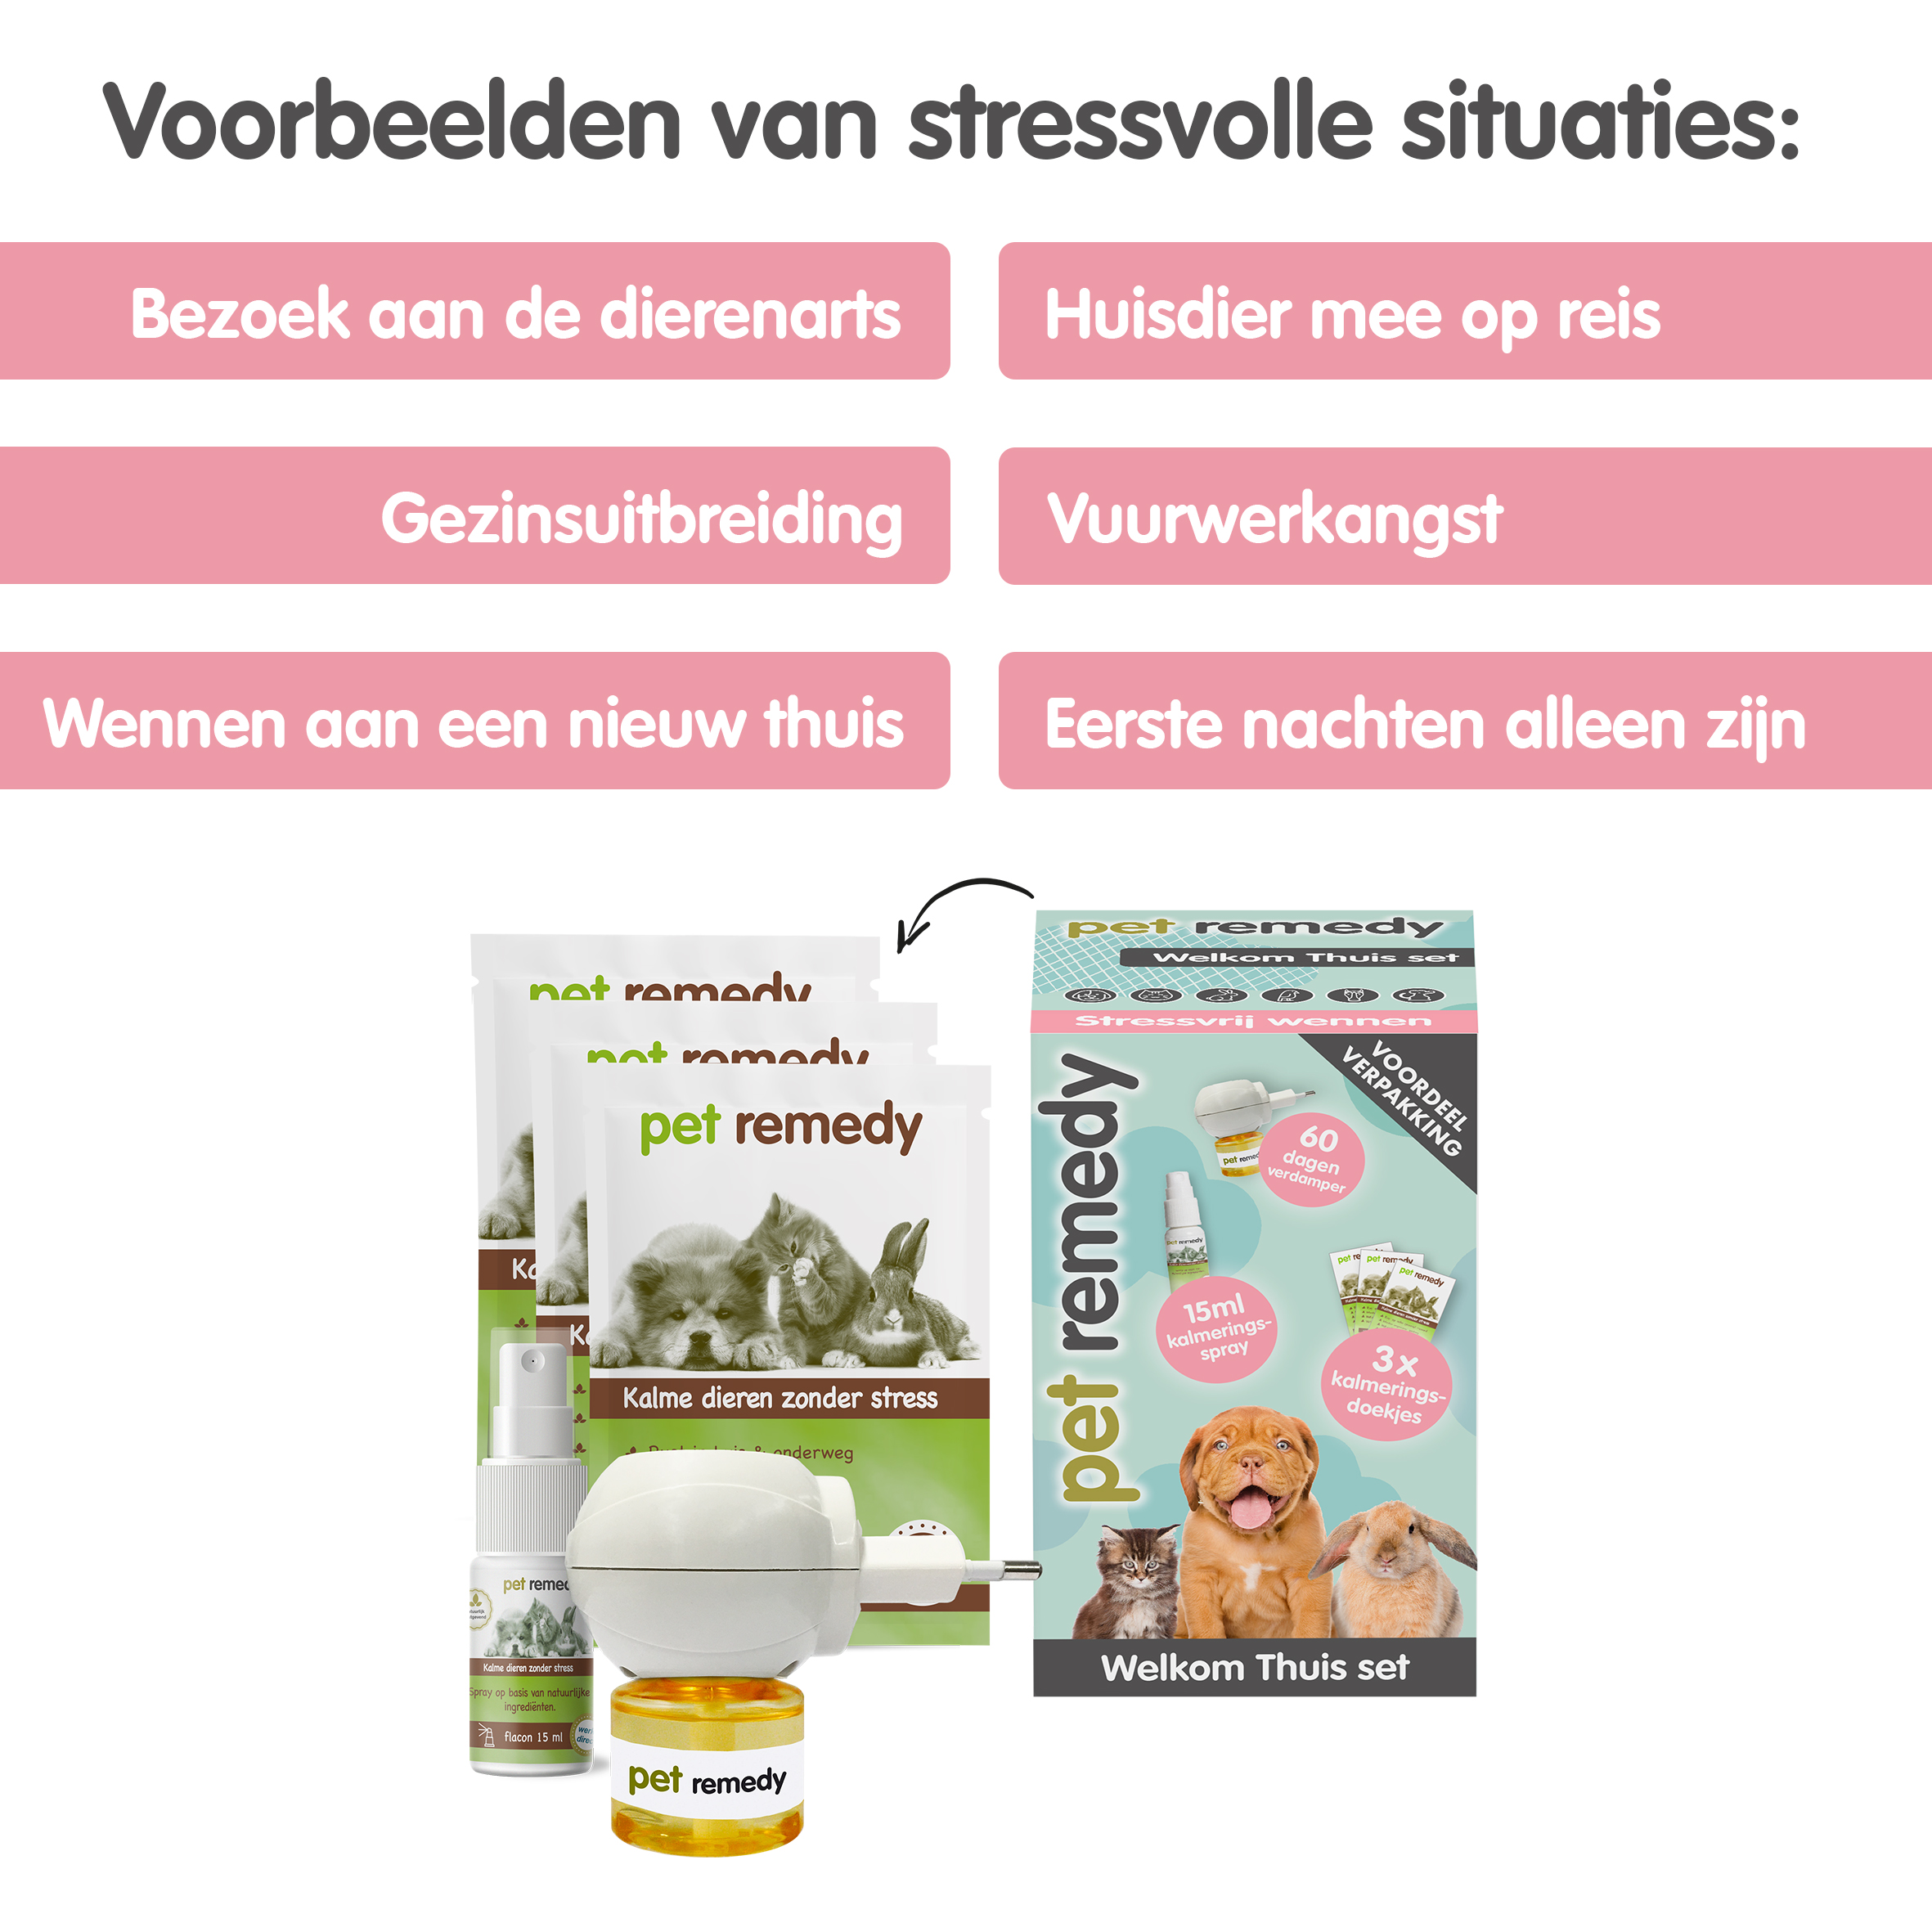 Pet Remedy Welkom Thuis Set tegen stress bij huisdieren - Emax.nl